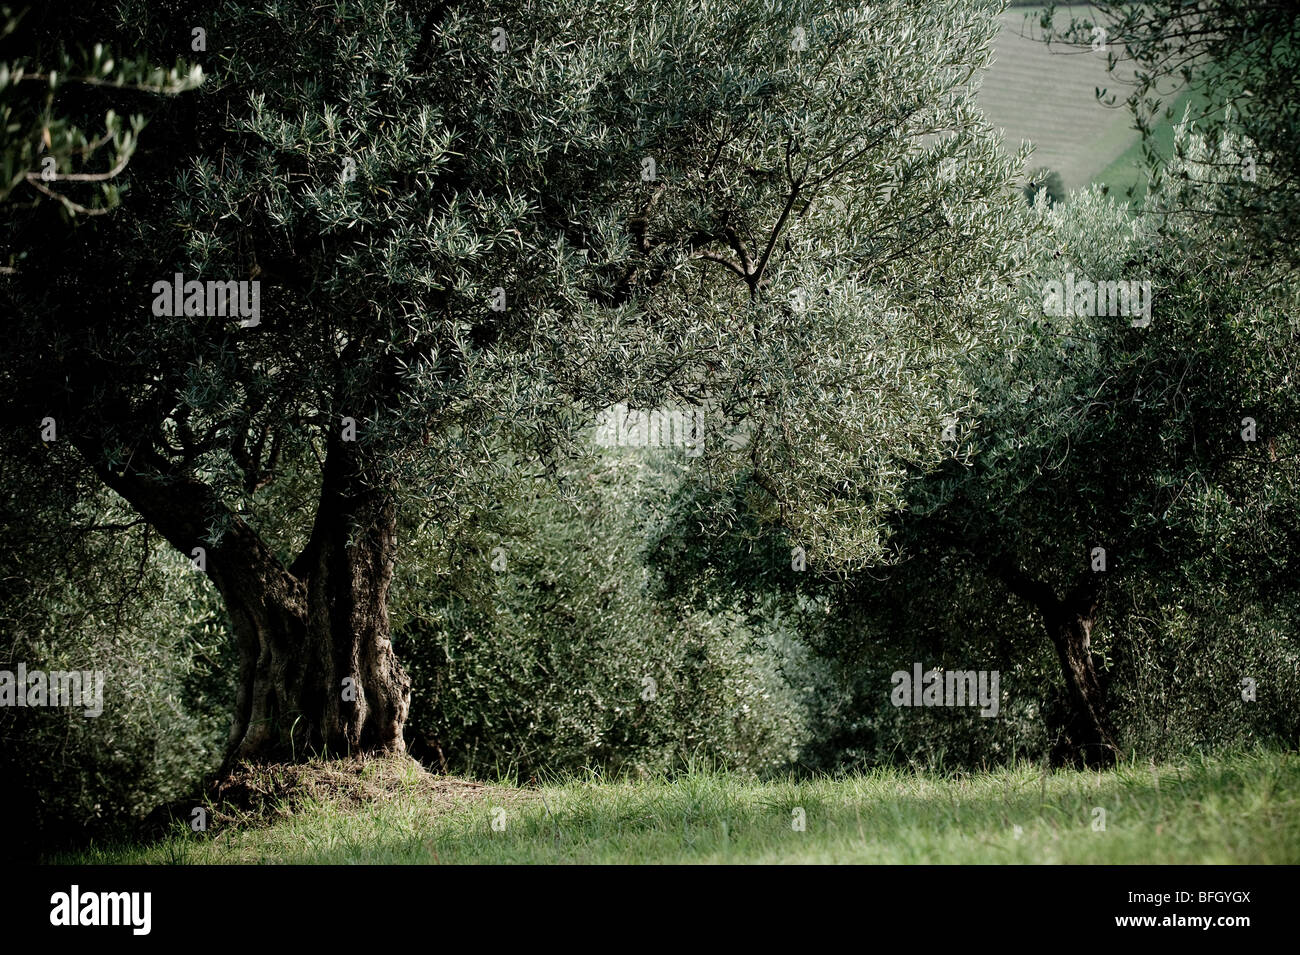 Les arbres d'Olive Grove en prêt pour la récolte, Chieti, Abruzzes, Italie Banque D'Images